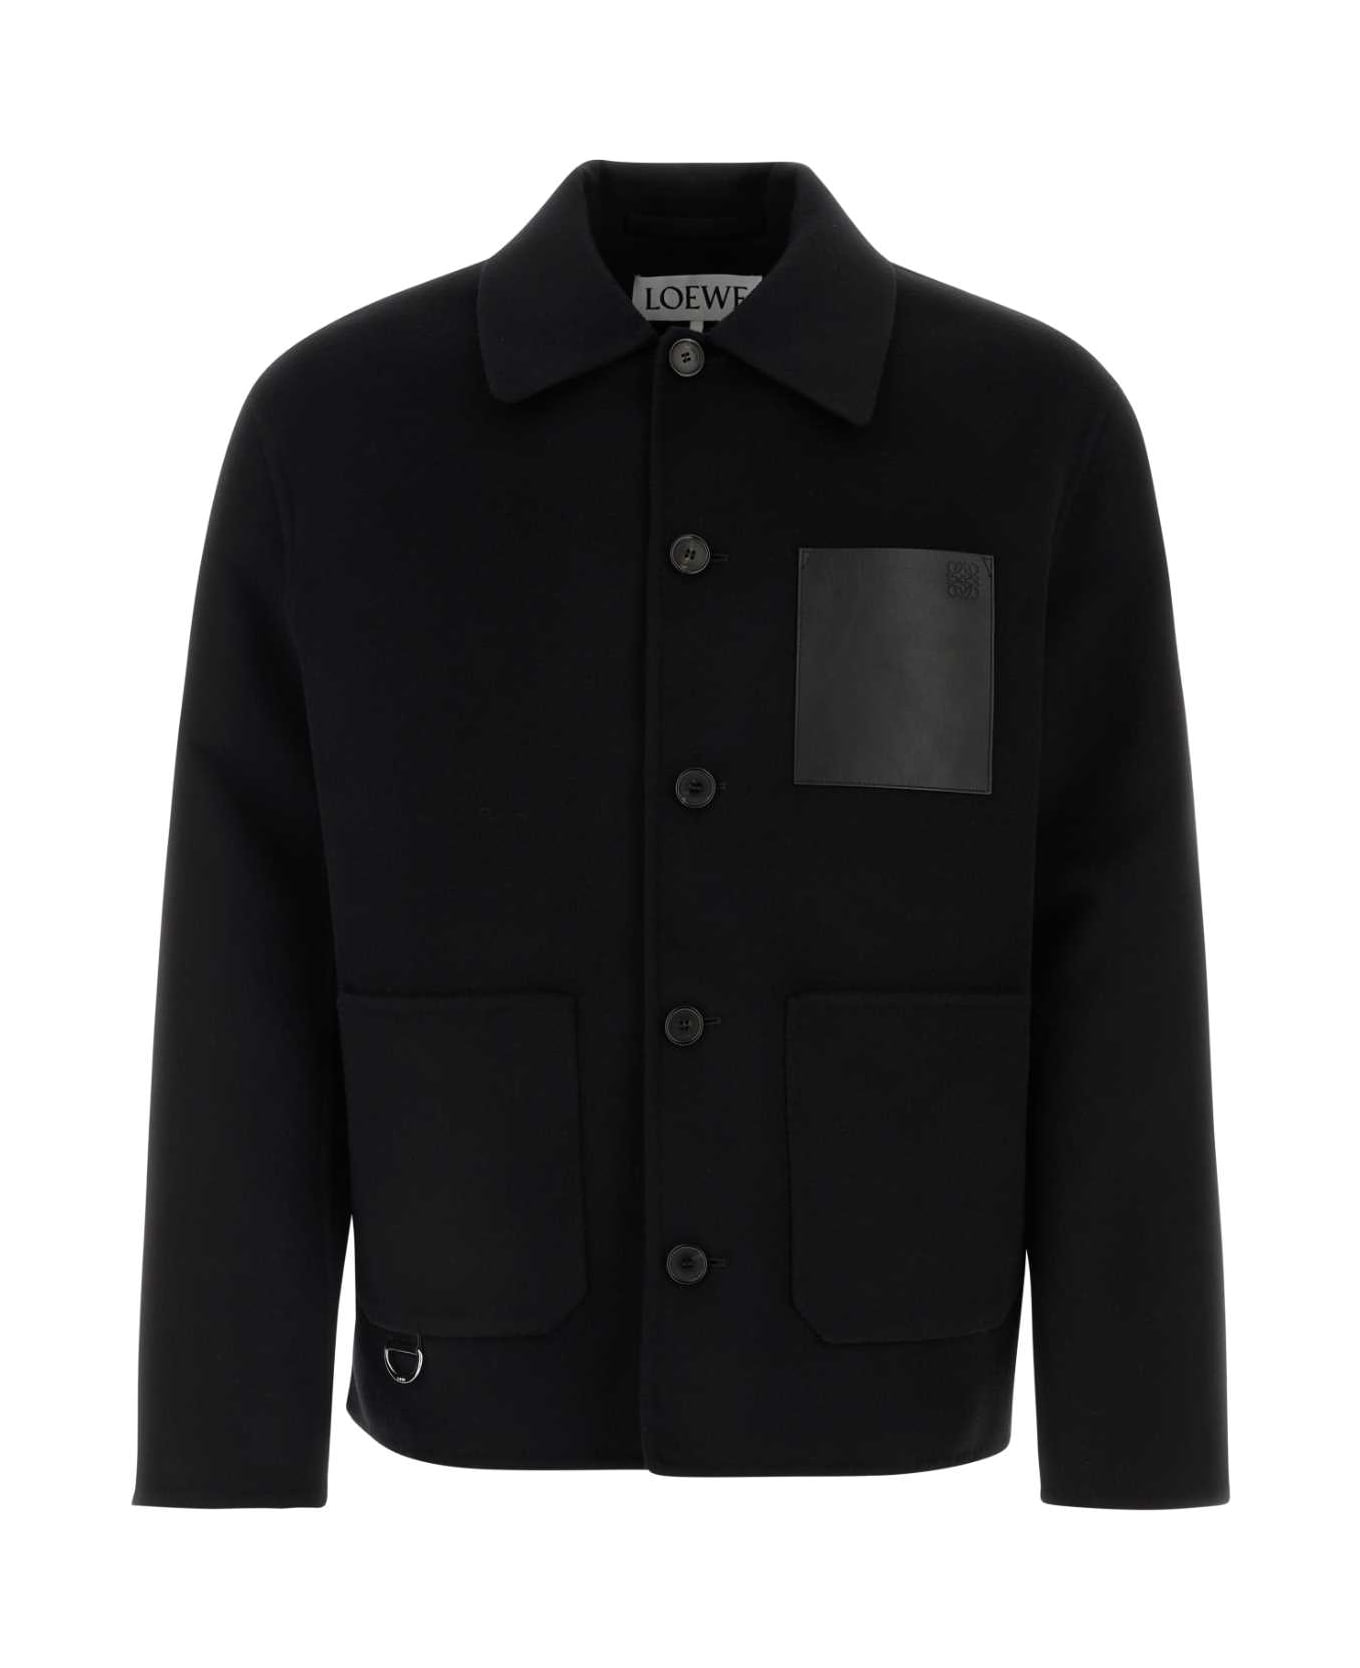 Loewe Black Wool Blend Jacket - BLACK